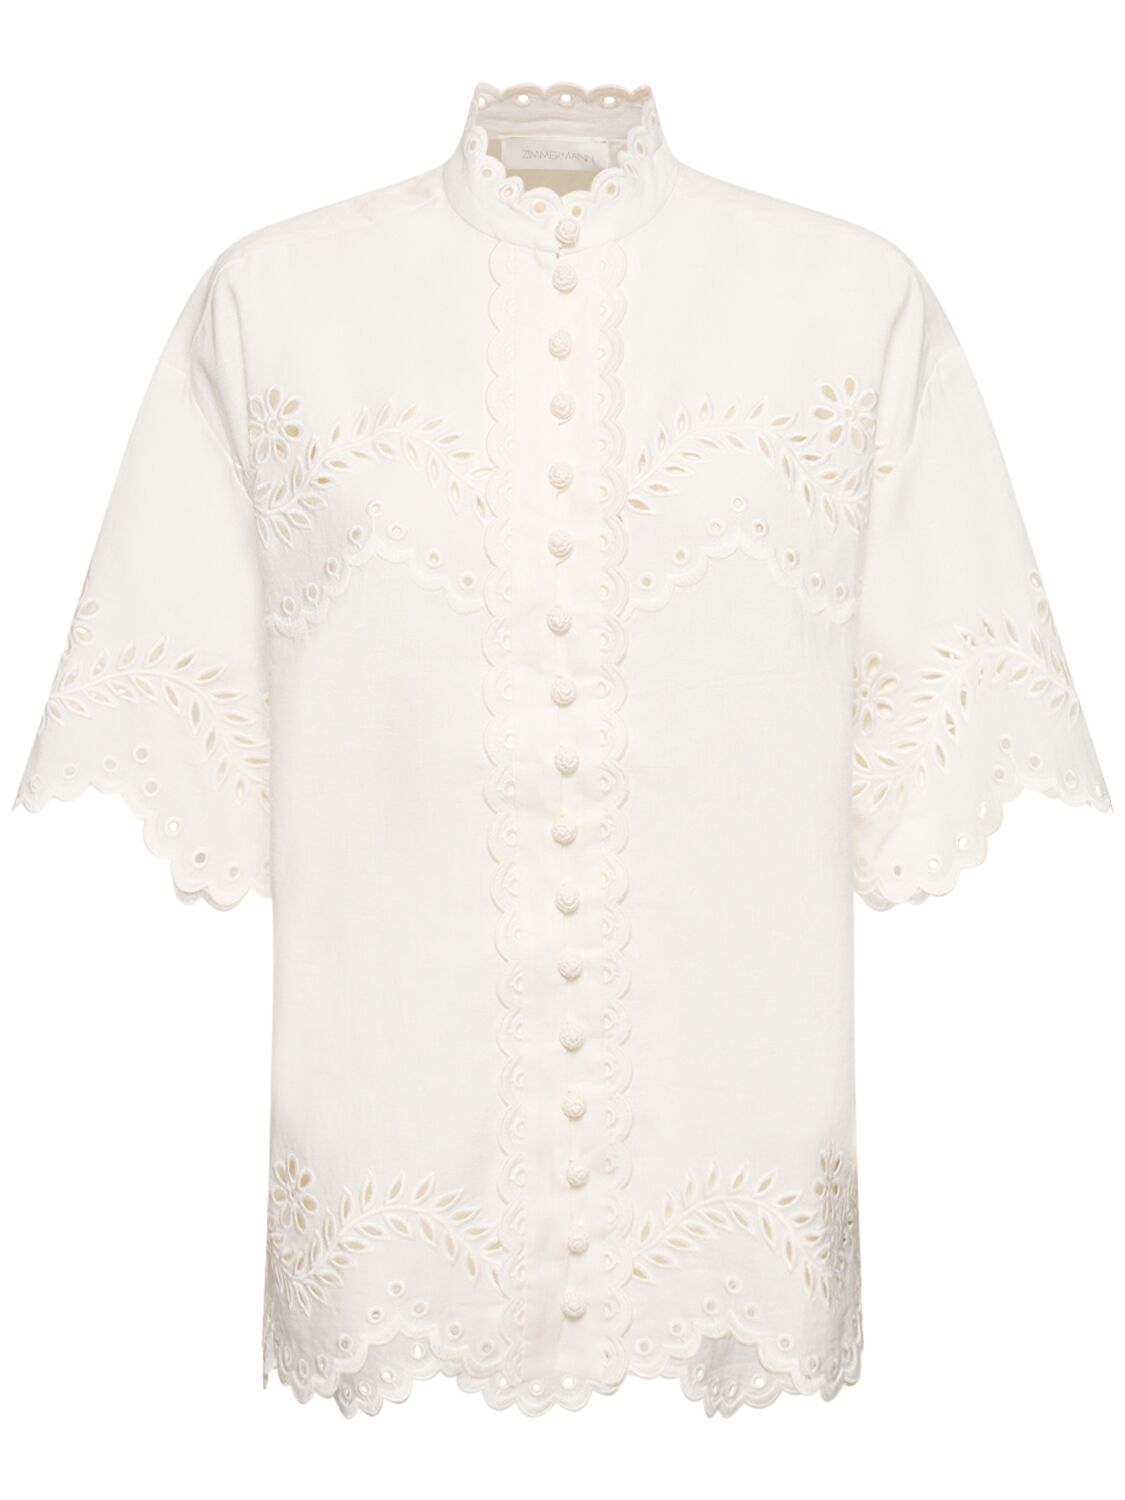 Zimmermann Junie Embroidered Cotton Shirt In Ivory